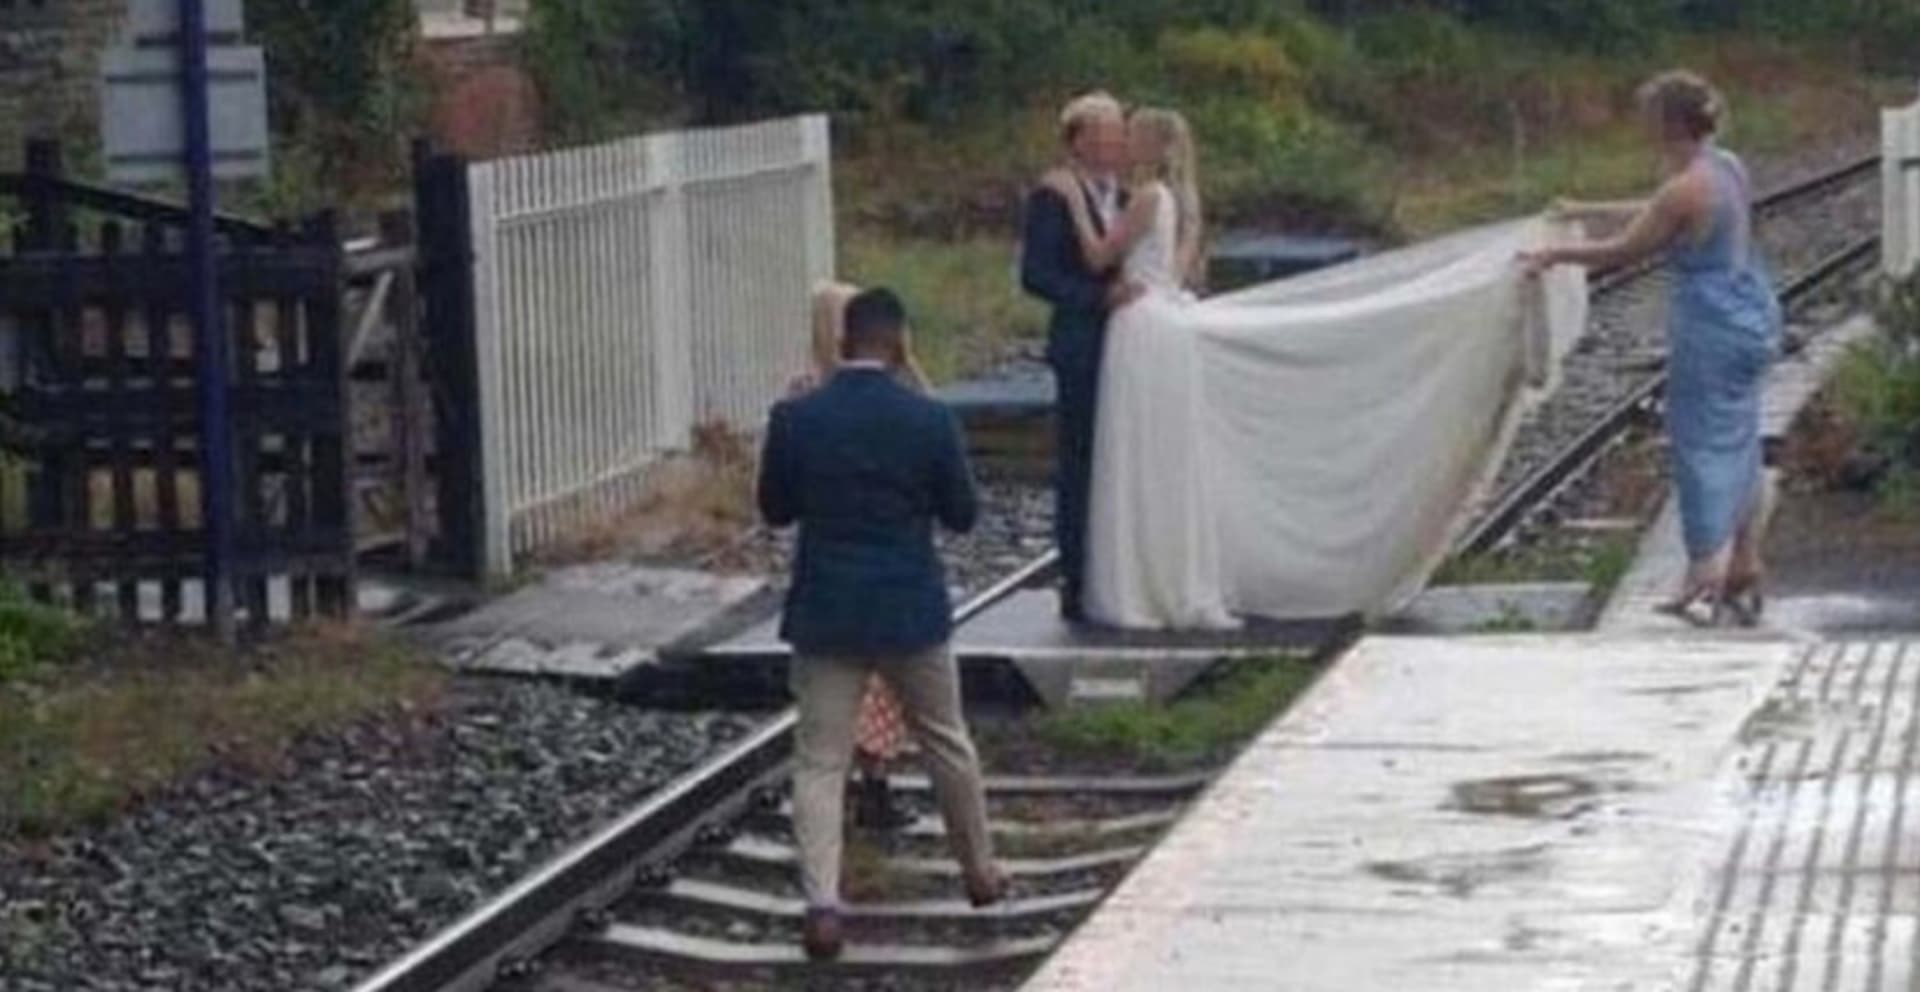 Svatební fotka na kolejích způsobila kontroverzi 1